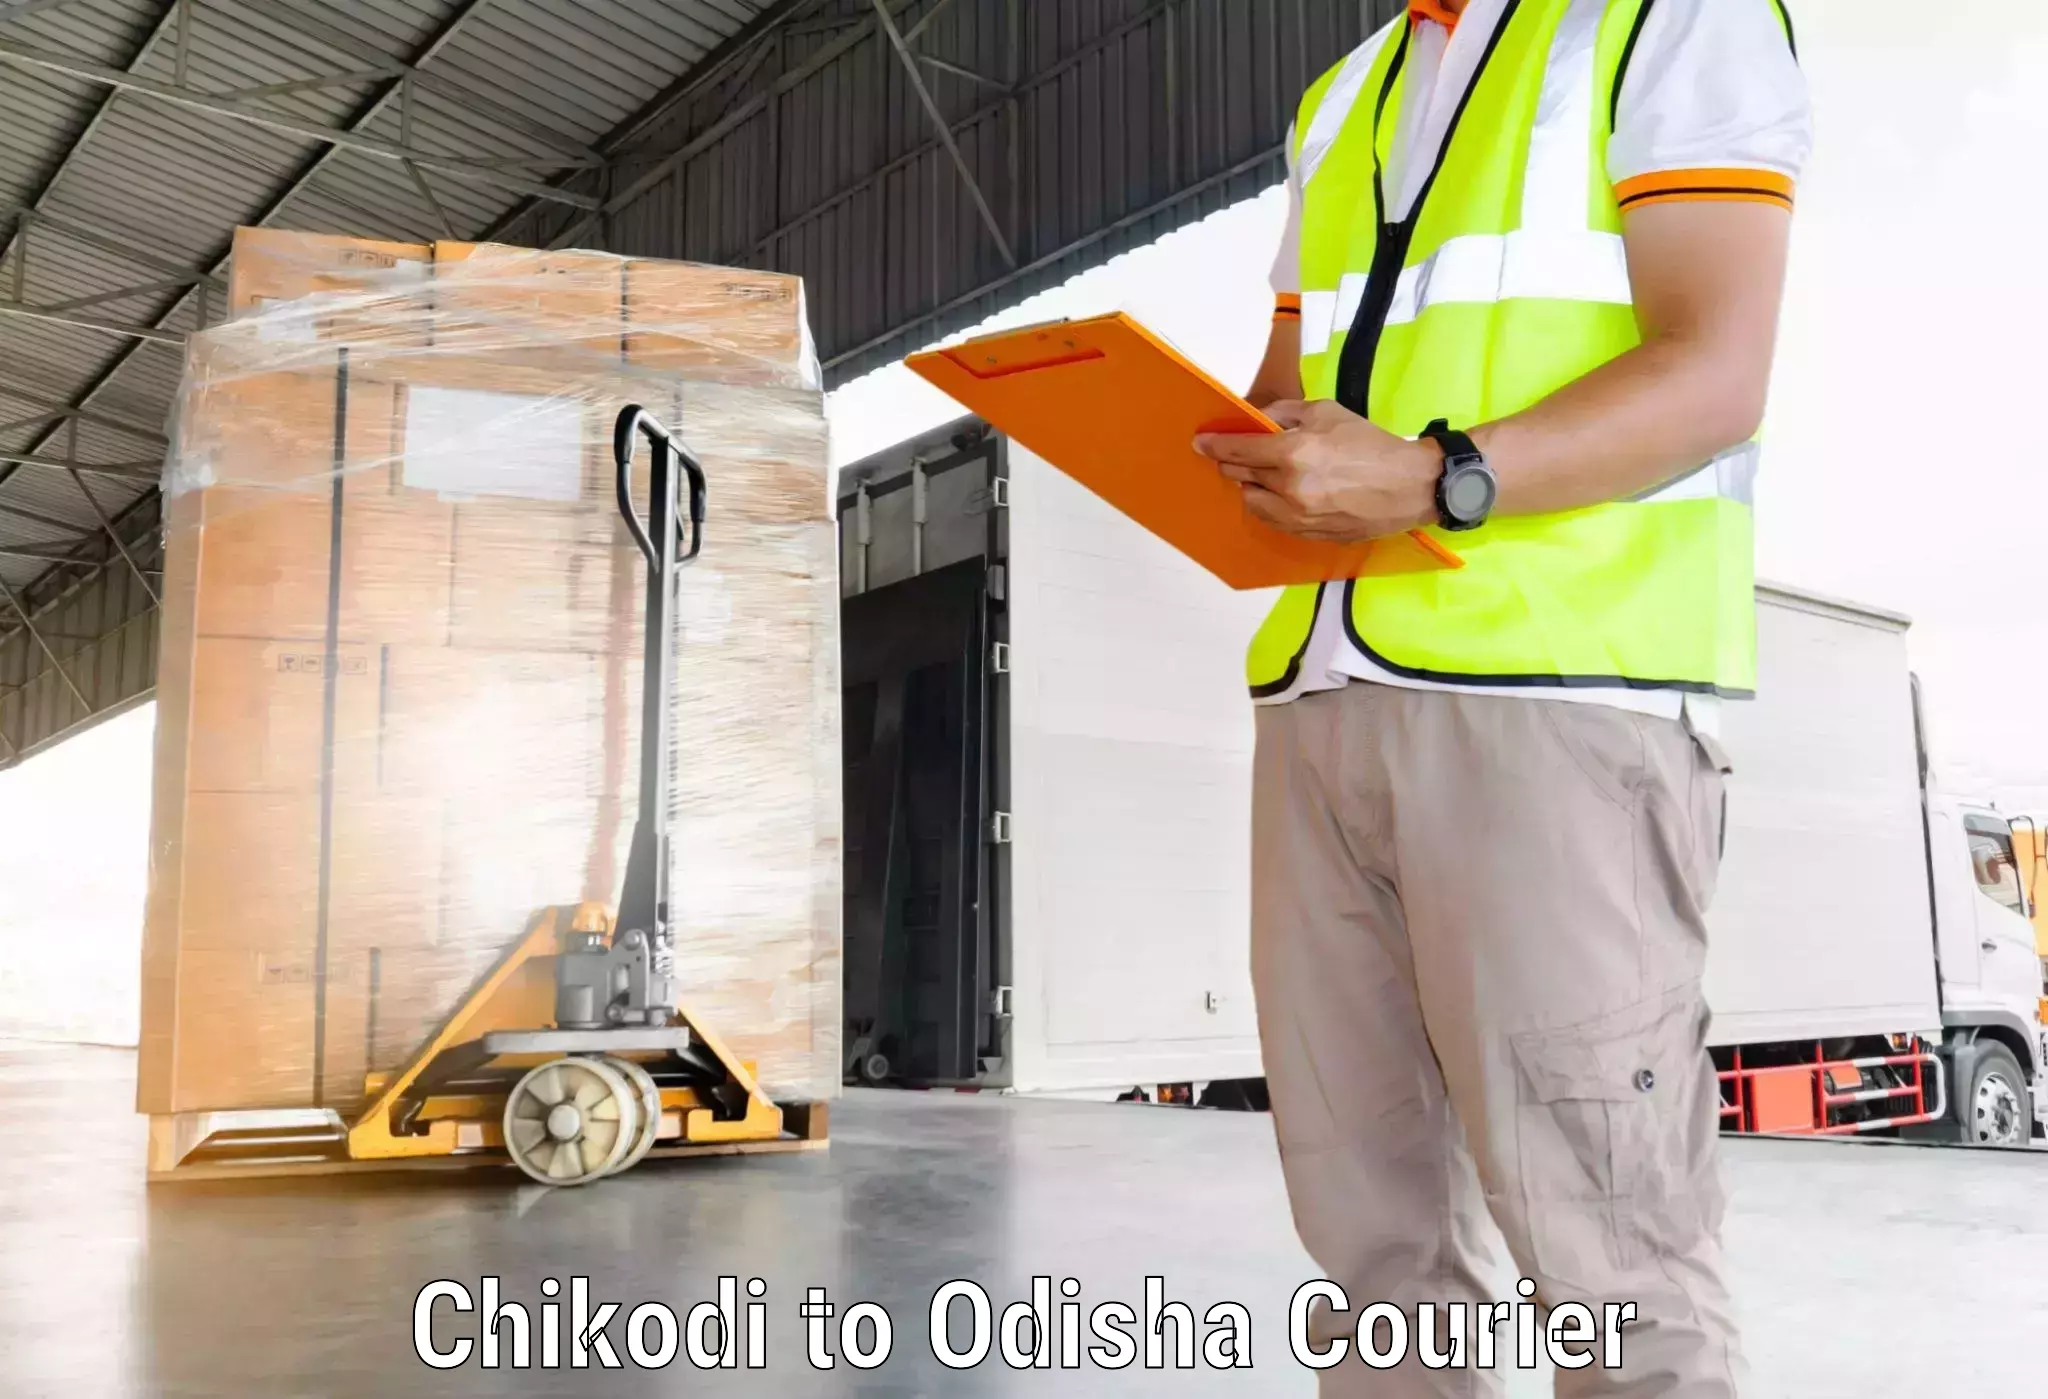 Fast delivery service Chikodi to Subdega